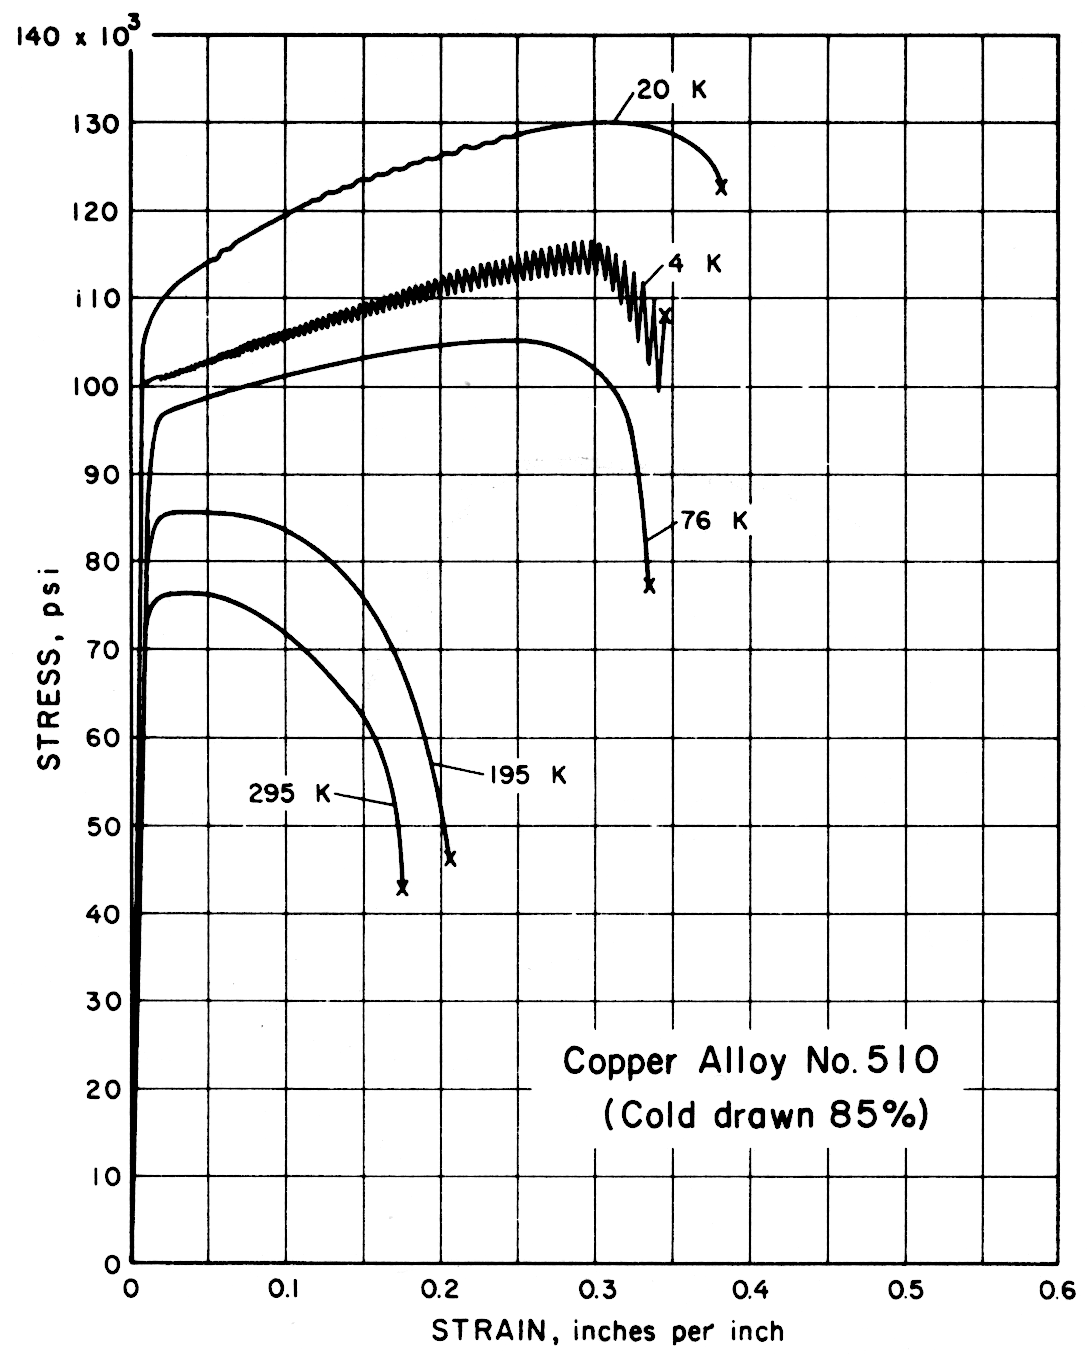 Copper Alloy No. 510 (Cold drawn 85%)